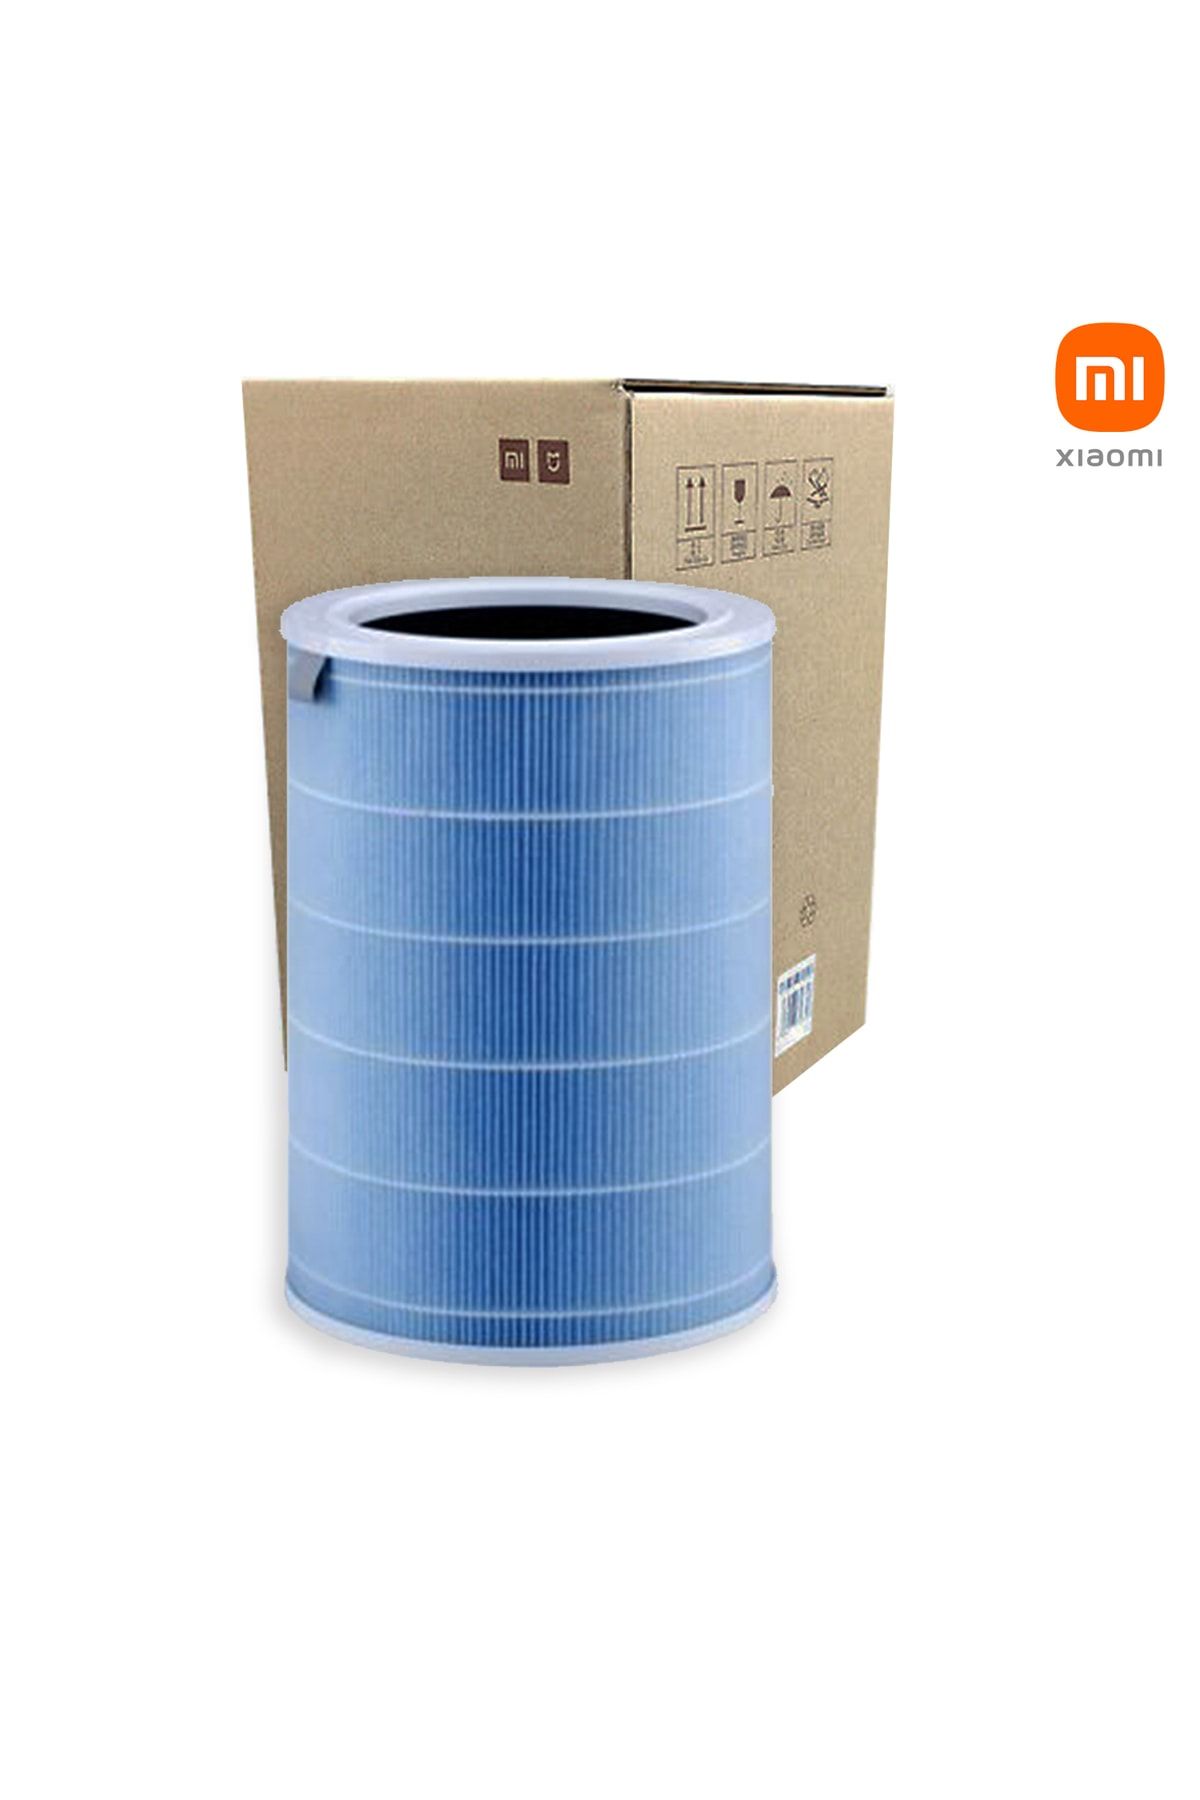 Xiaomi 3c Mi Air Purifier 3c Filtre Mavi High Efficiency